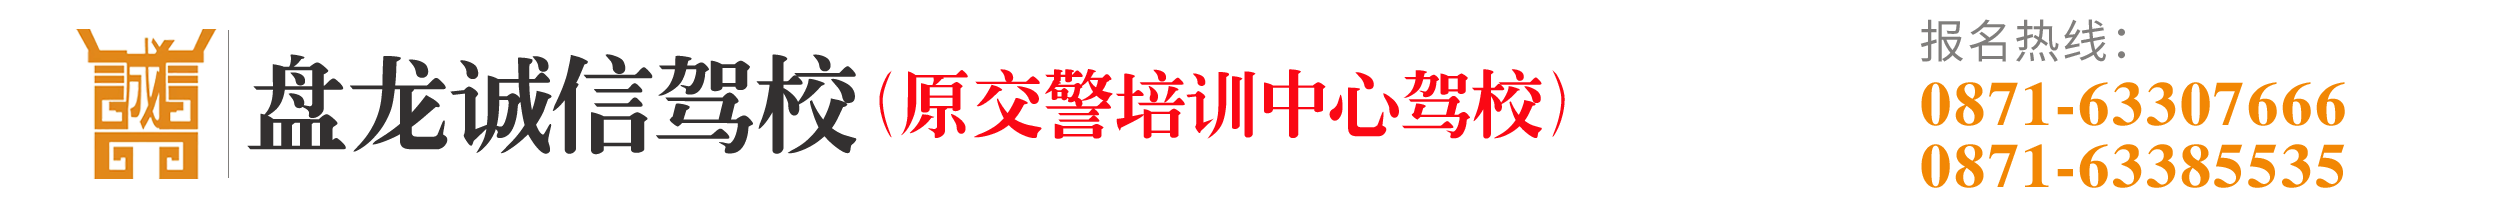 昆明盘龙诚信驾校_Logo